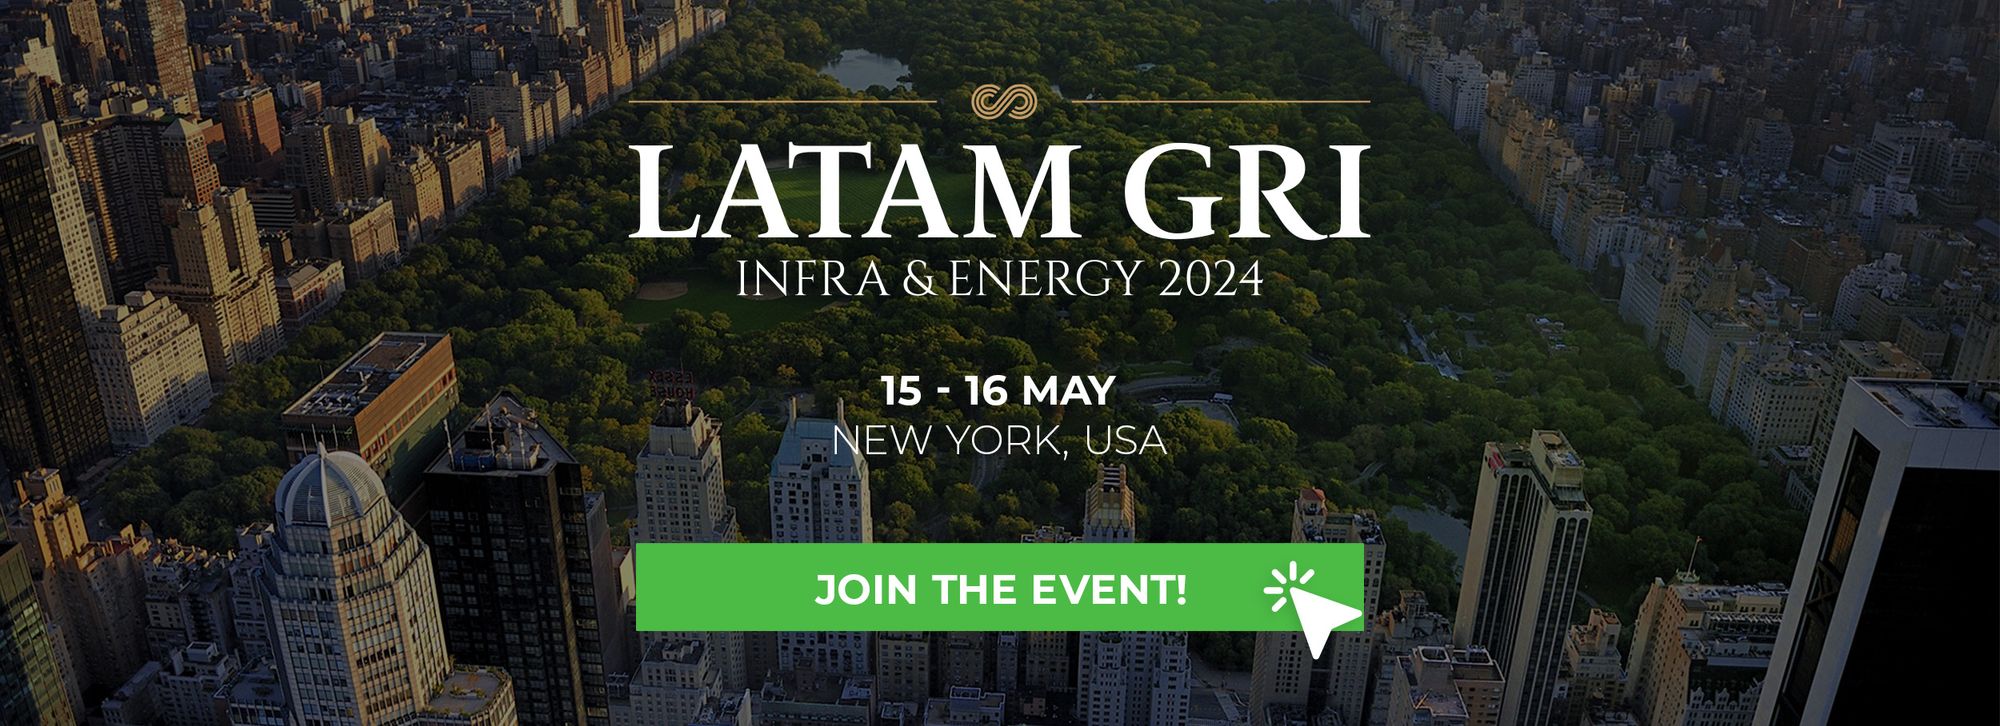 Latam GRI Infra & Energy 2024